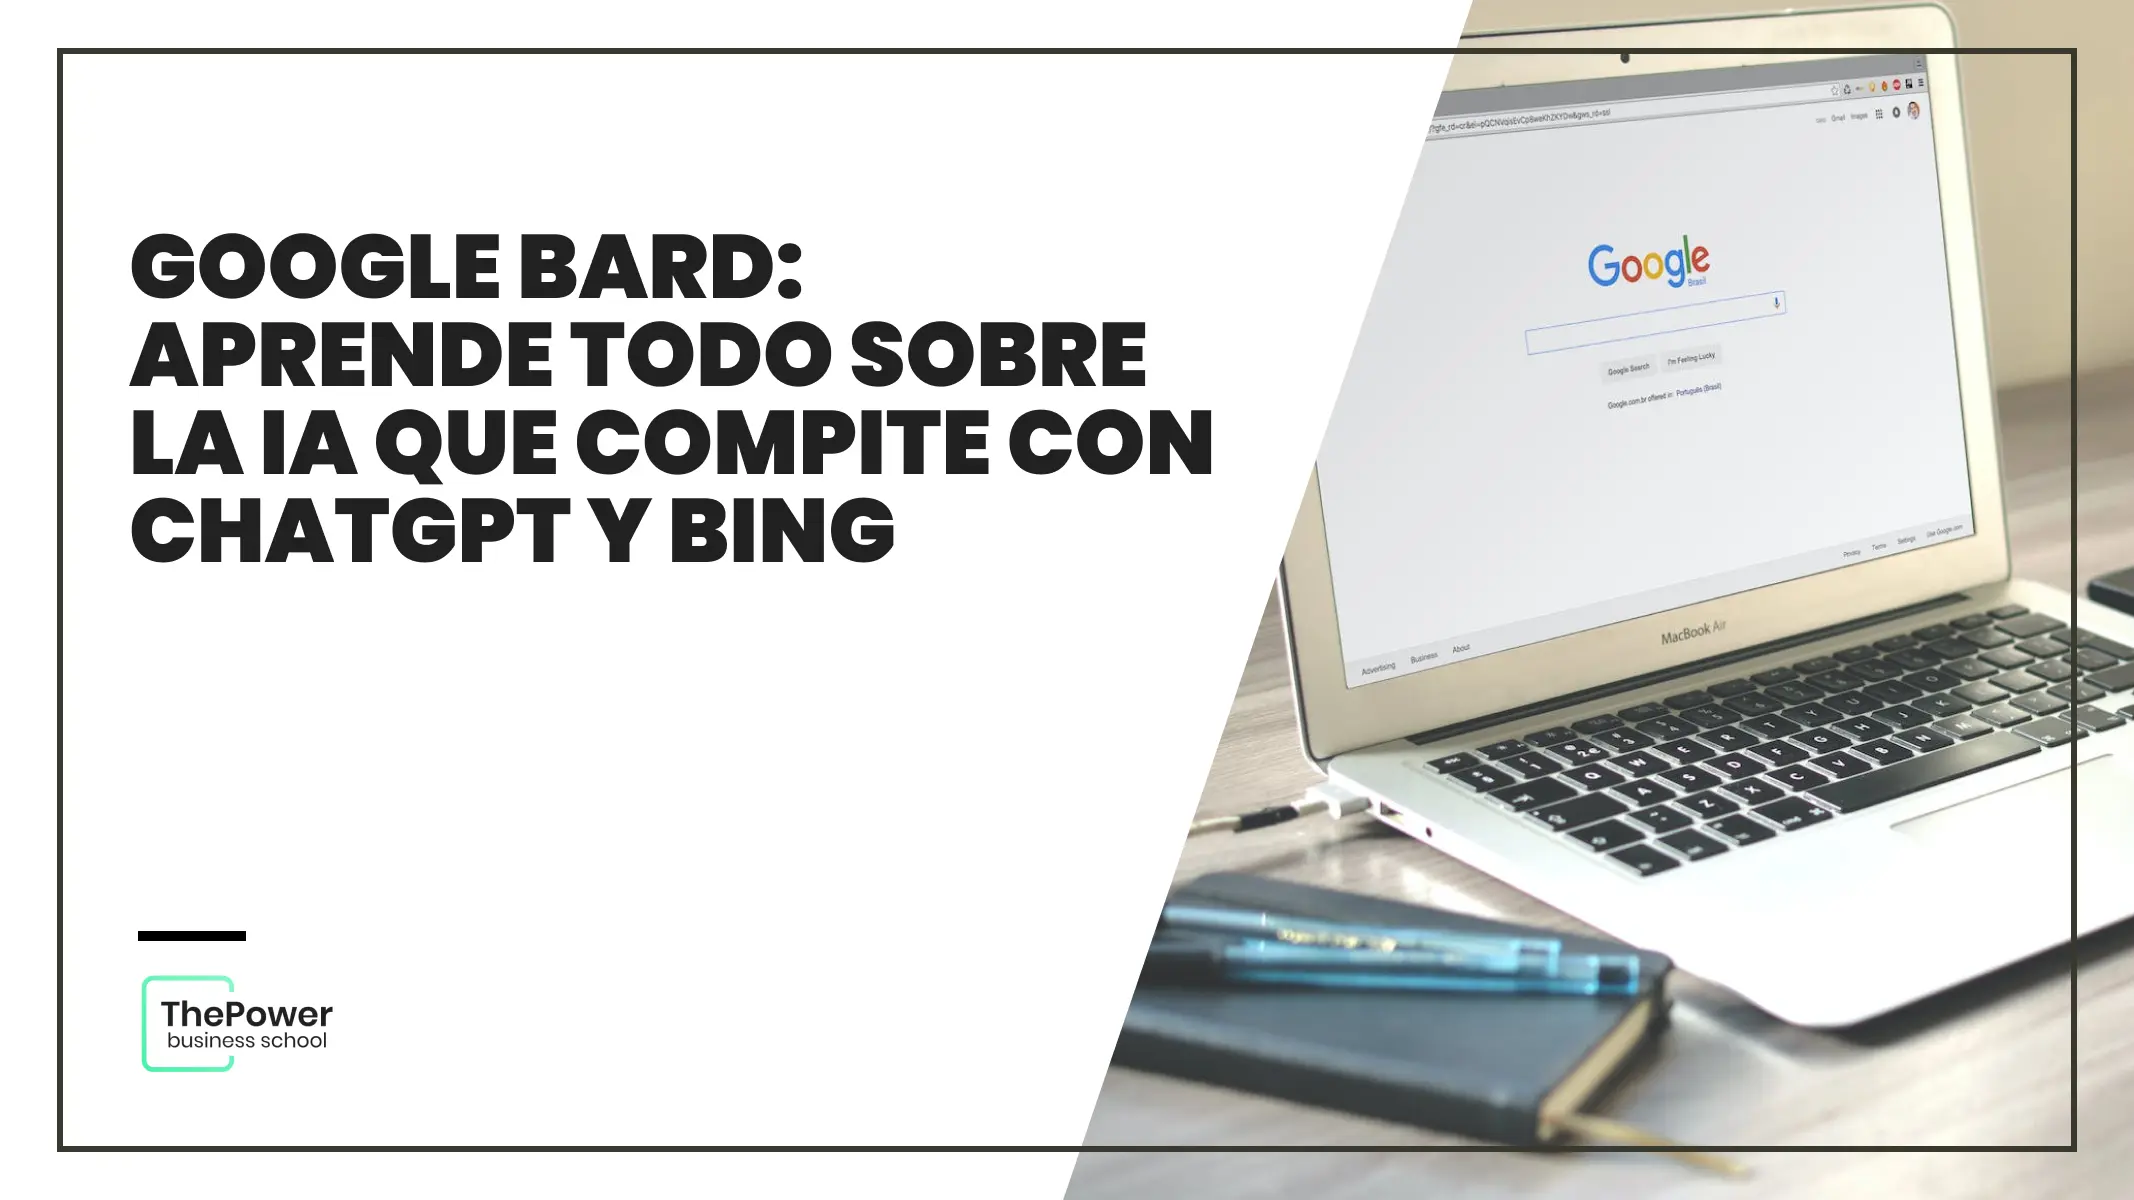 Google Bard vs Chatgpt vs Bing